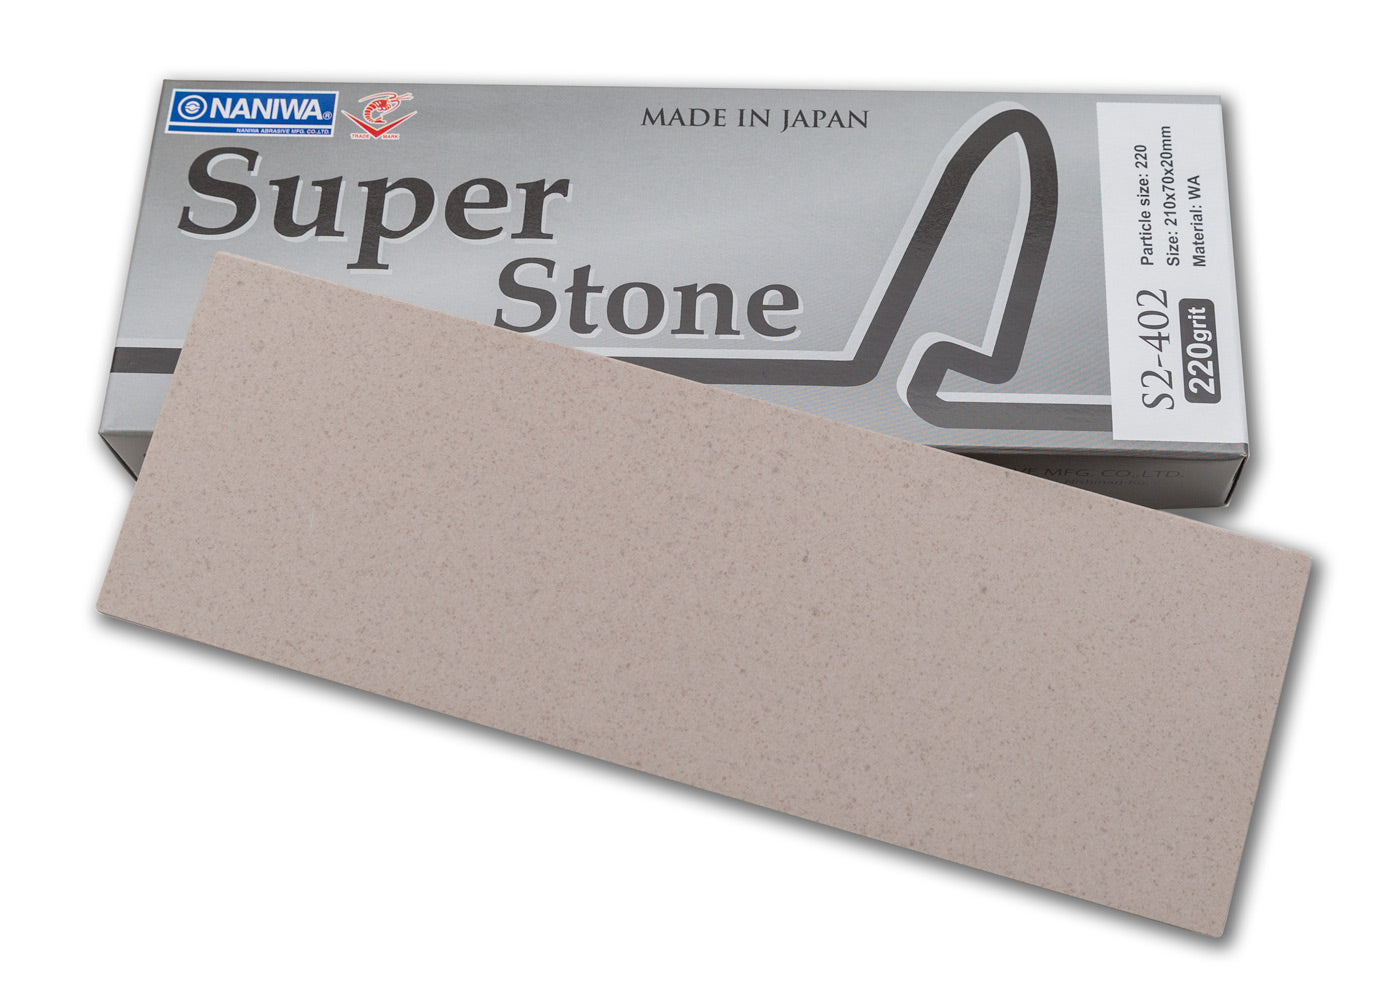 Naniwa Super-Stone Japanese Whetstone Sharpening Stone, 220 grit